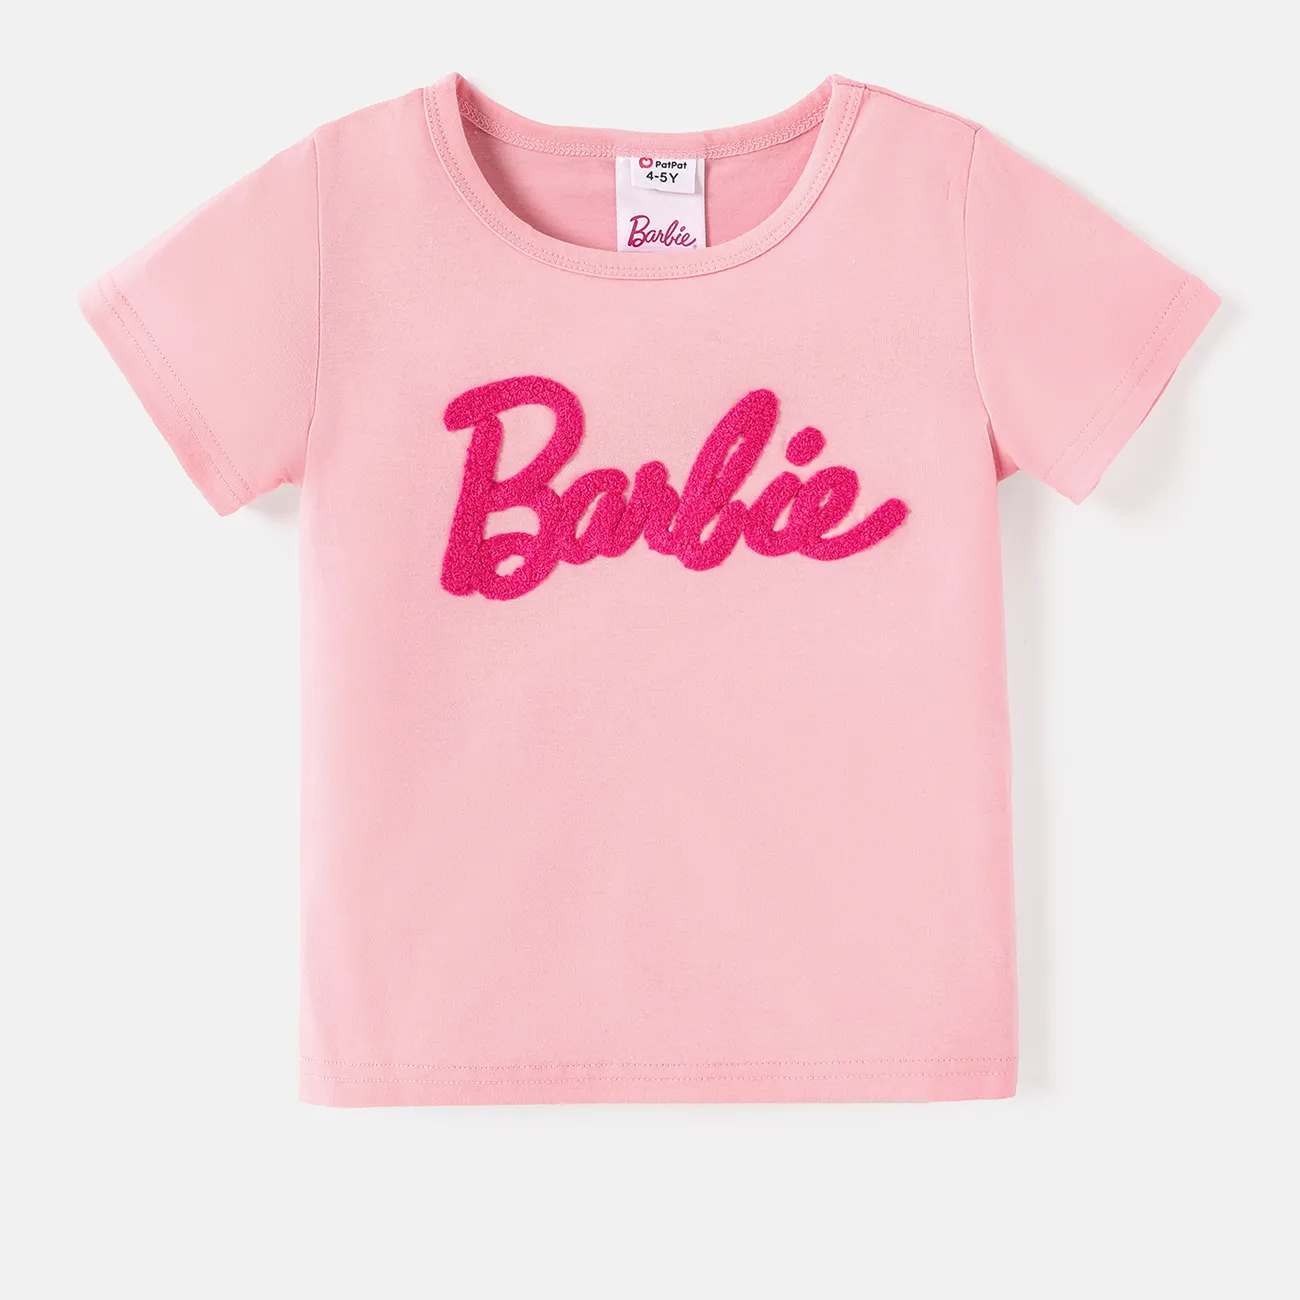 Barbie Chica Informal Camiseta Rosa claro big image 1